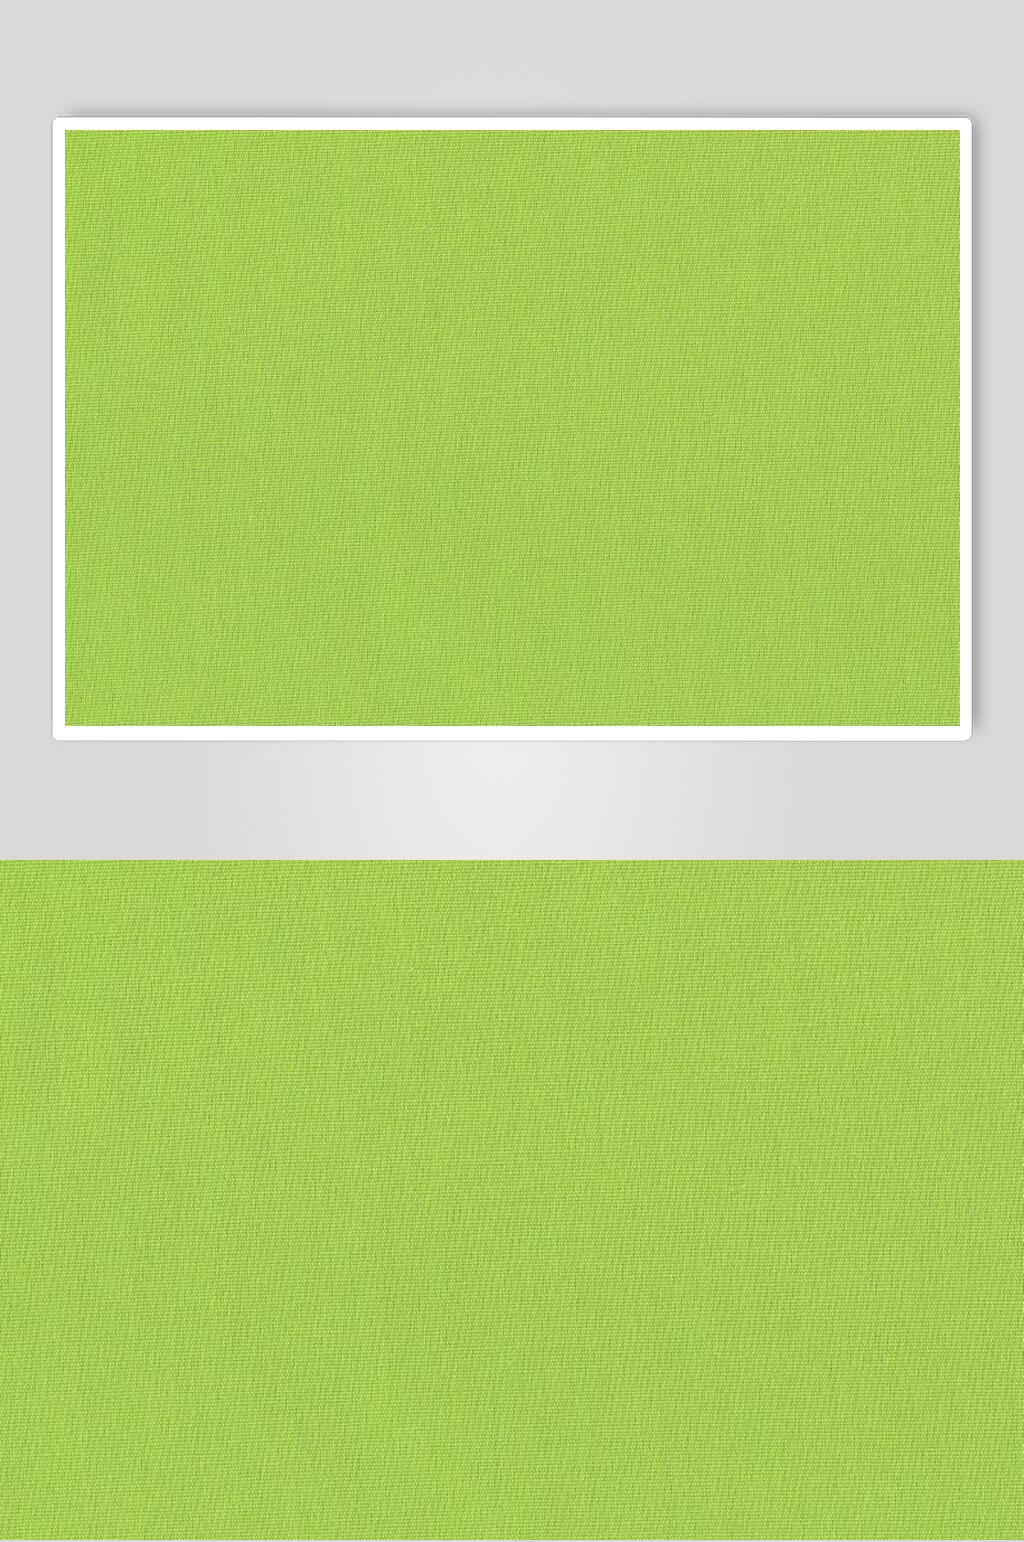 绿色纯色底图背景图片